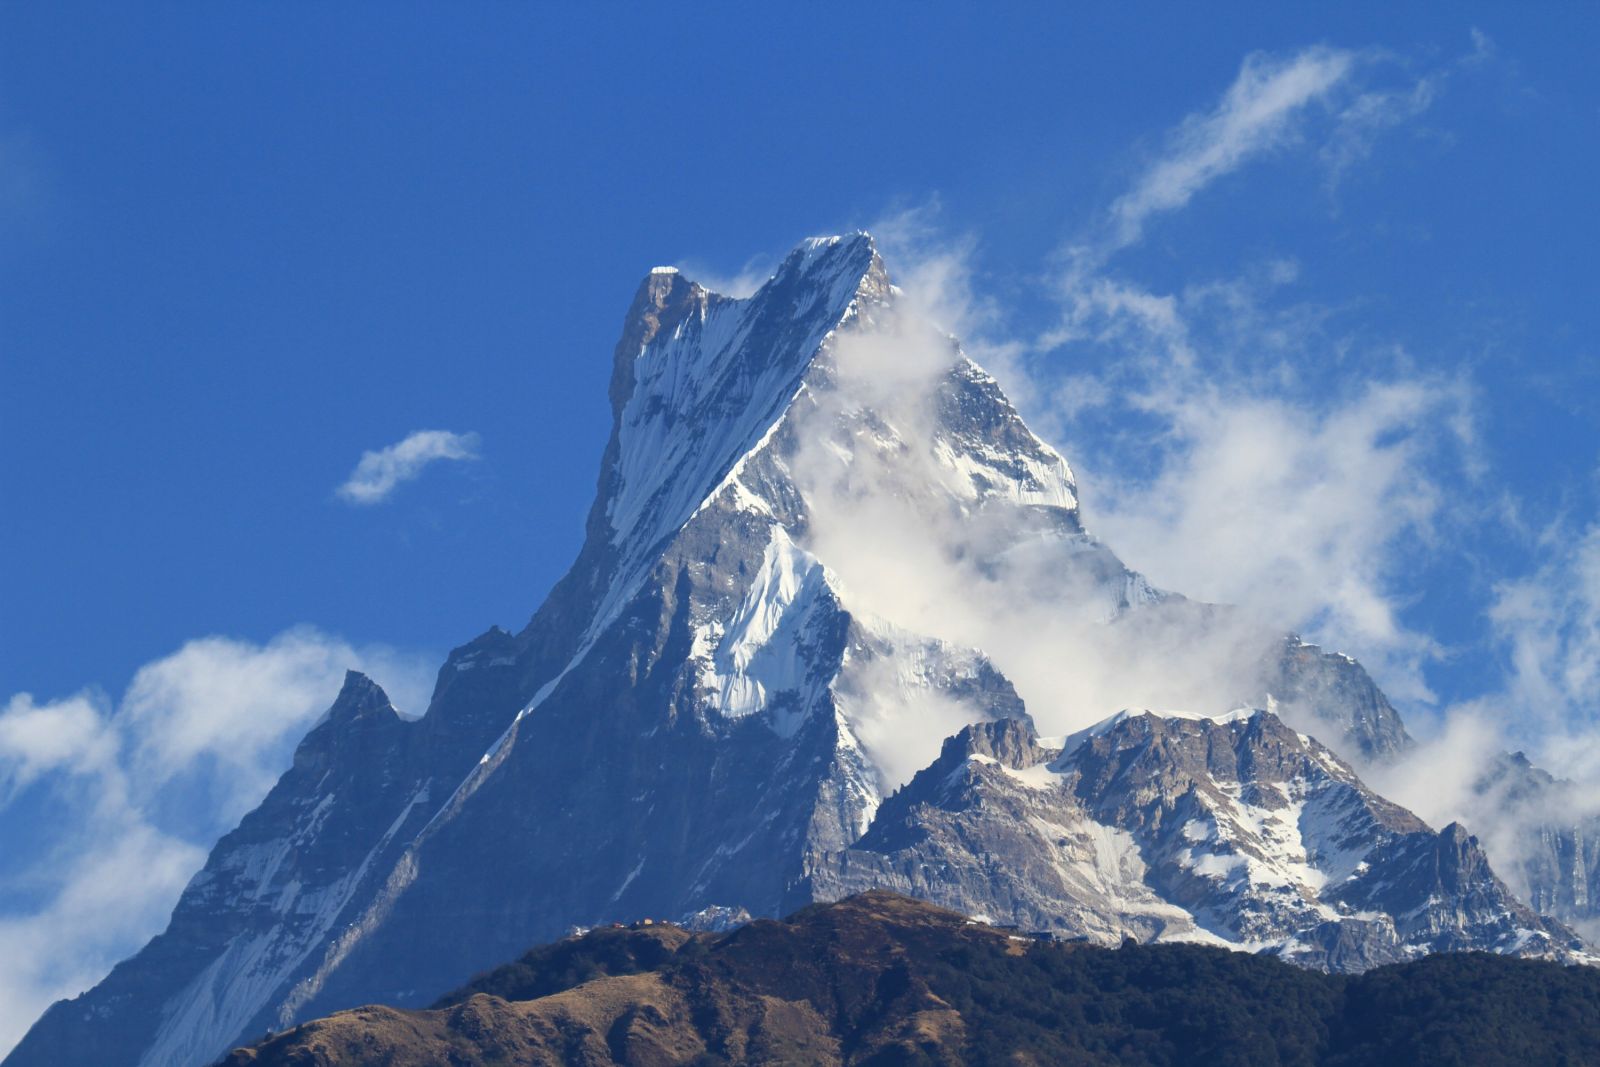 Der heilige Gipfel des Machhapuchare (6997m) darf nicht bestiegen werden